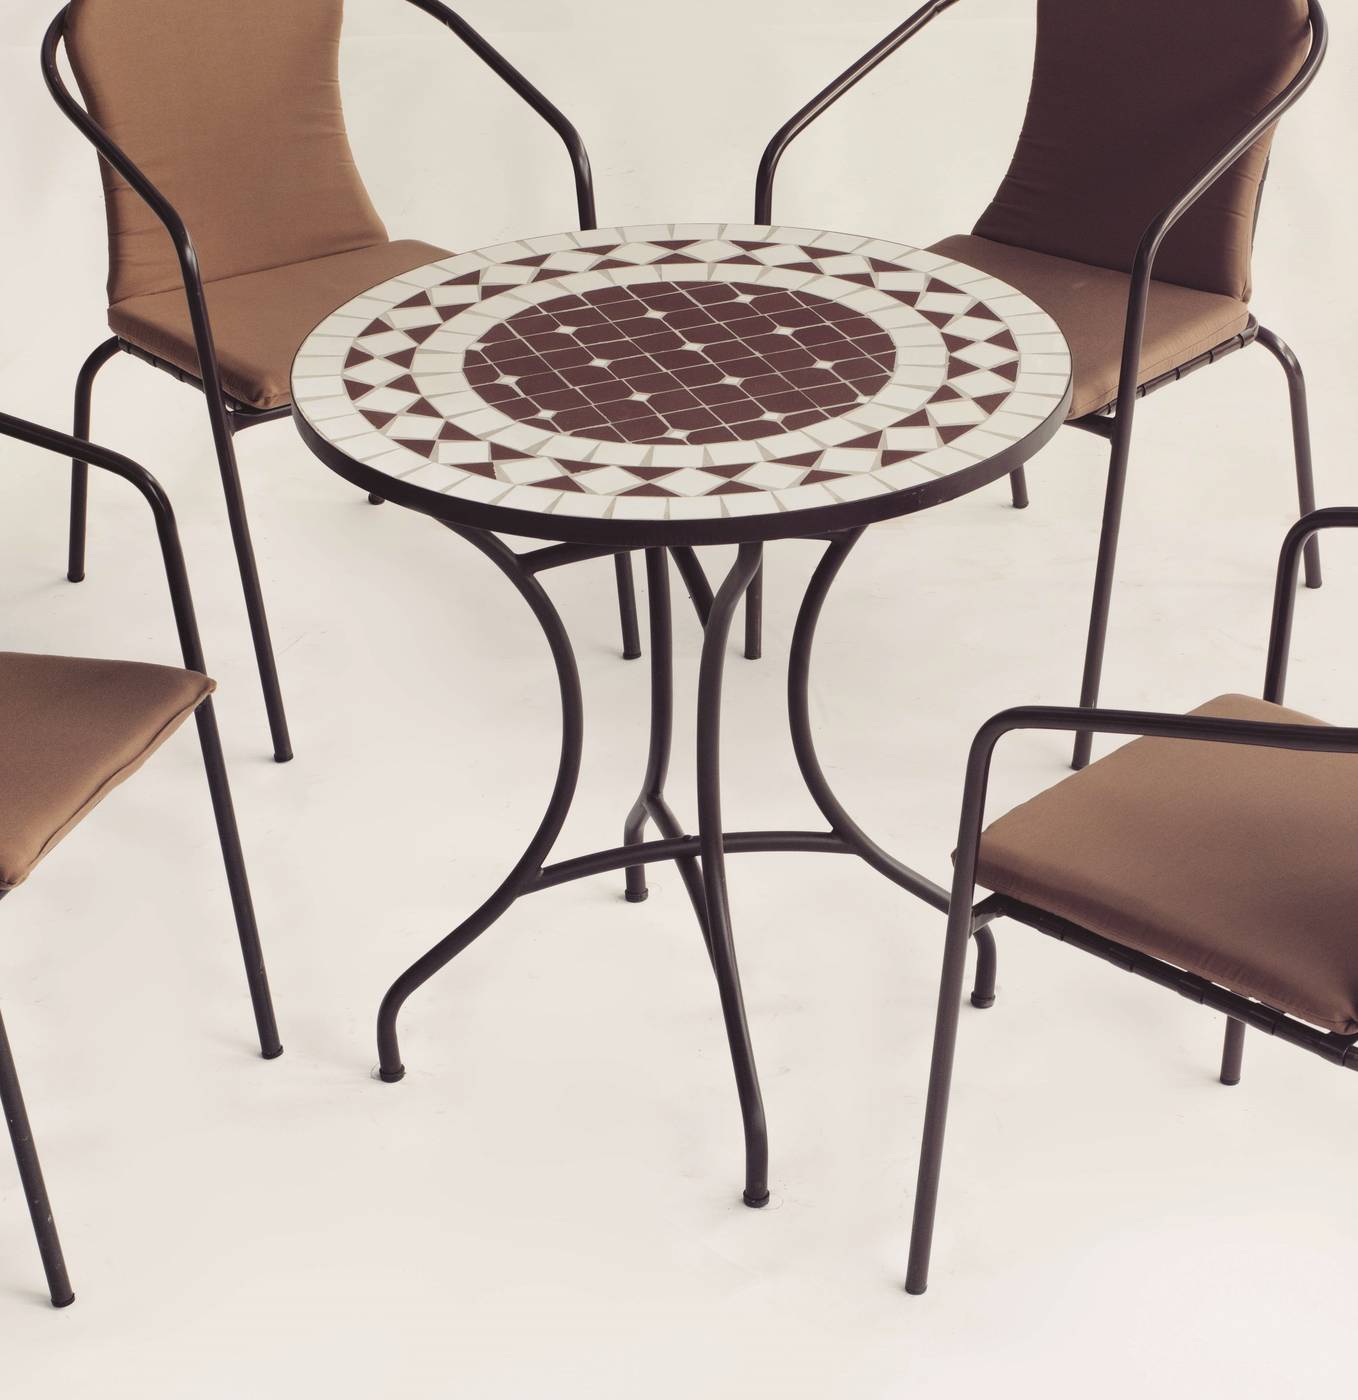 Conjunto Mosaico Oran75-Marsel - Mesa de forja color bronce, con tablero mosaico de 75 cm + 4 sillones apilables de aluminio con cojín.